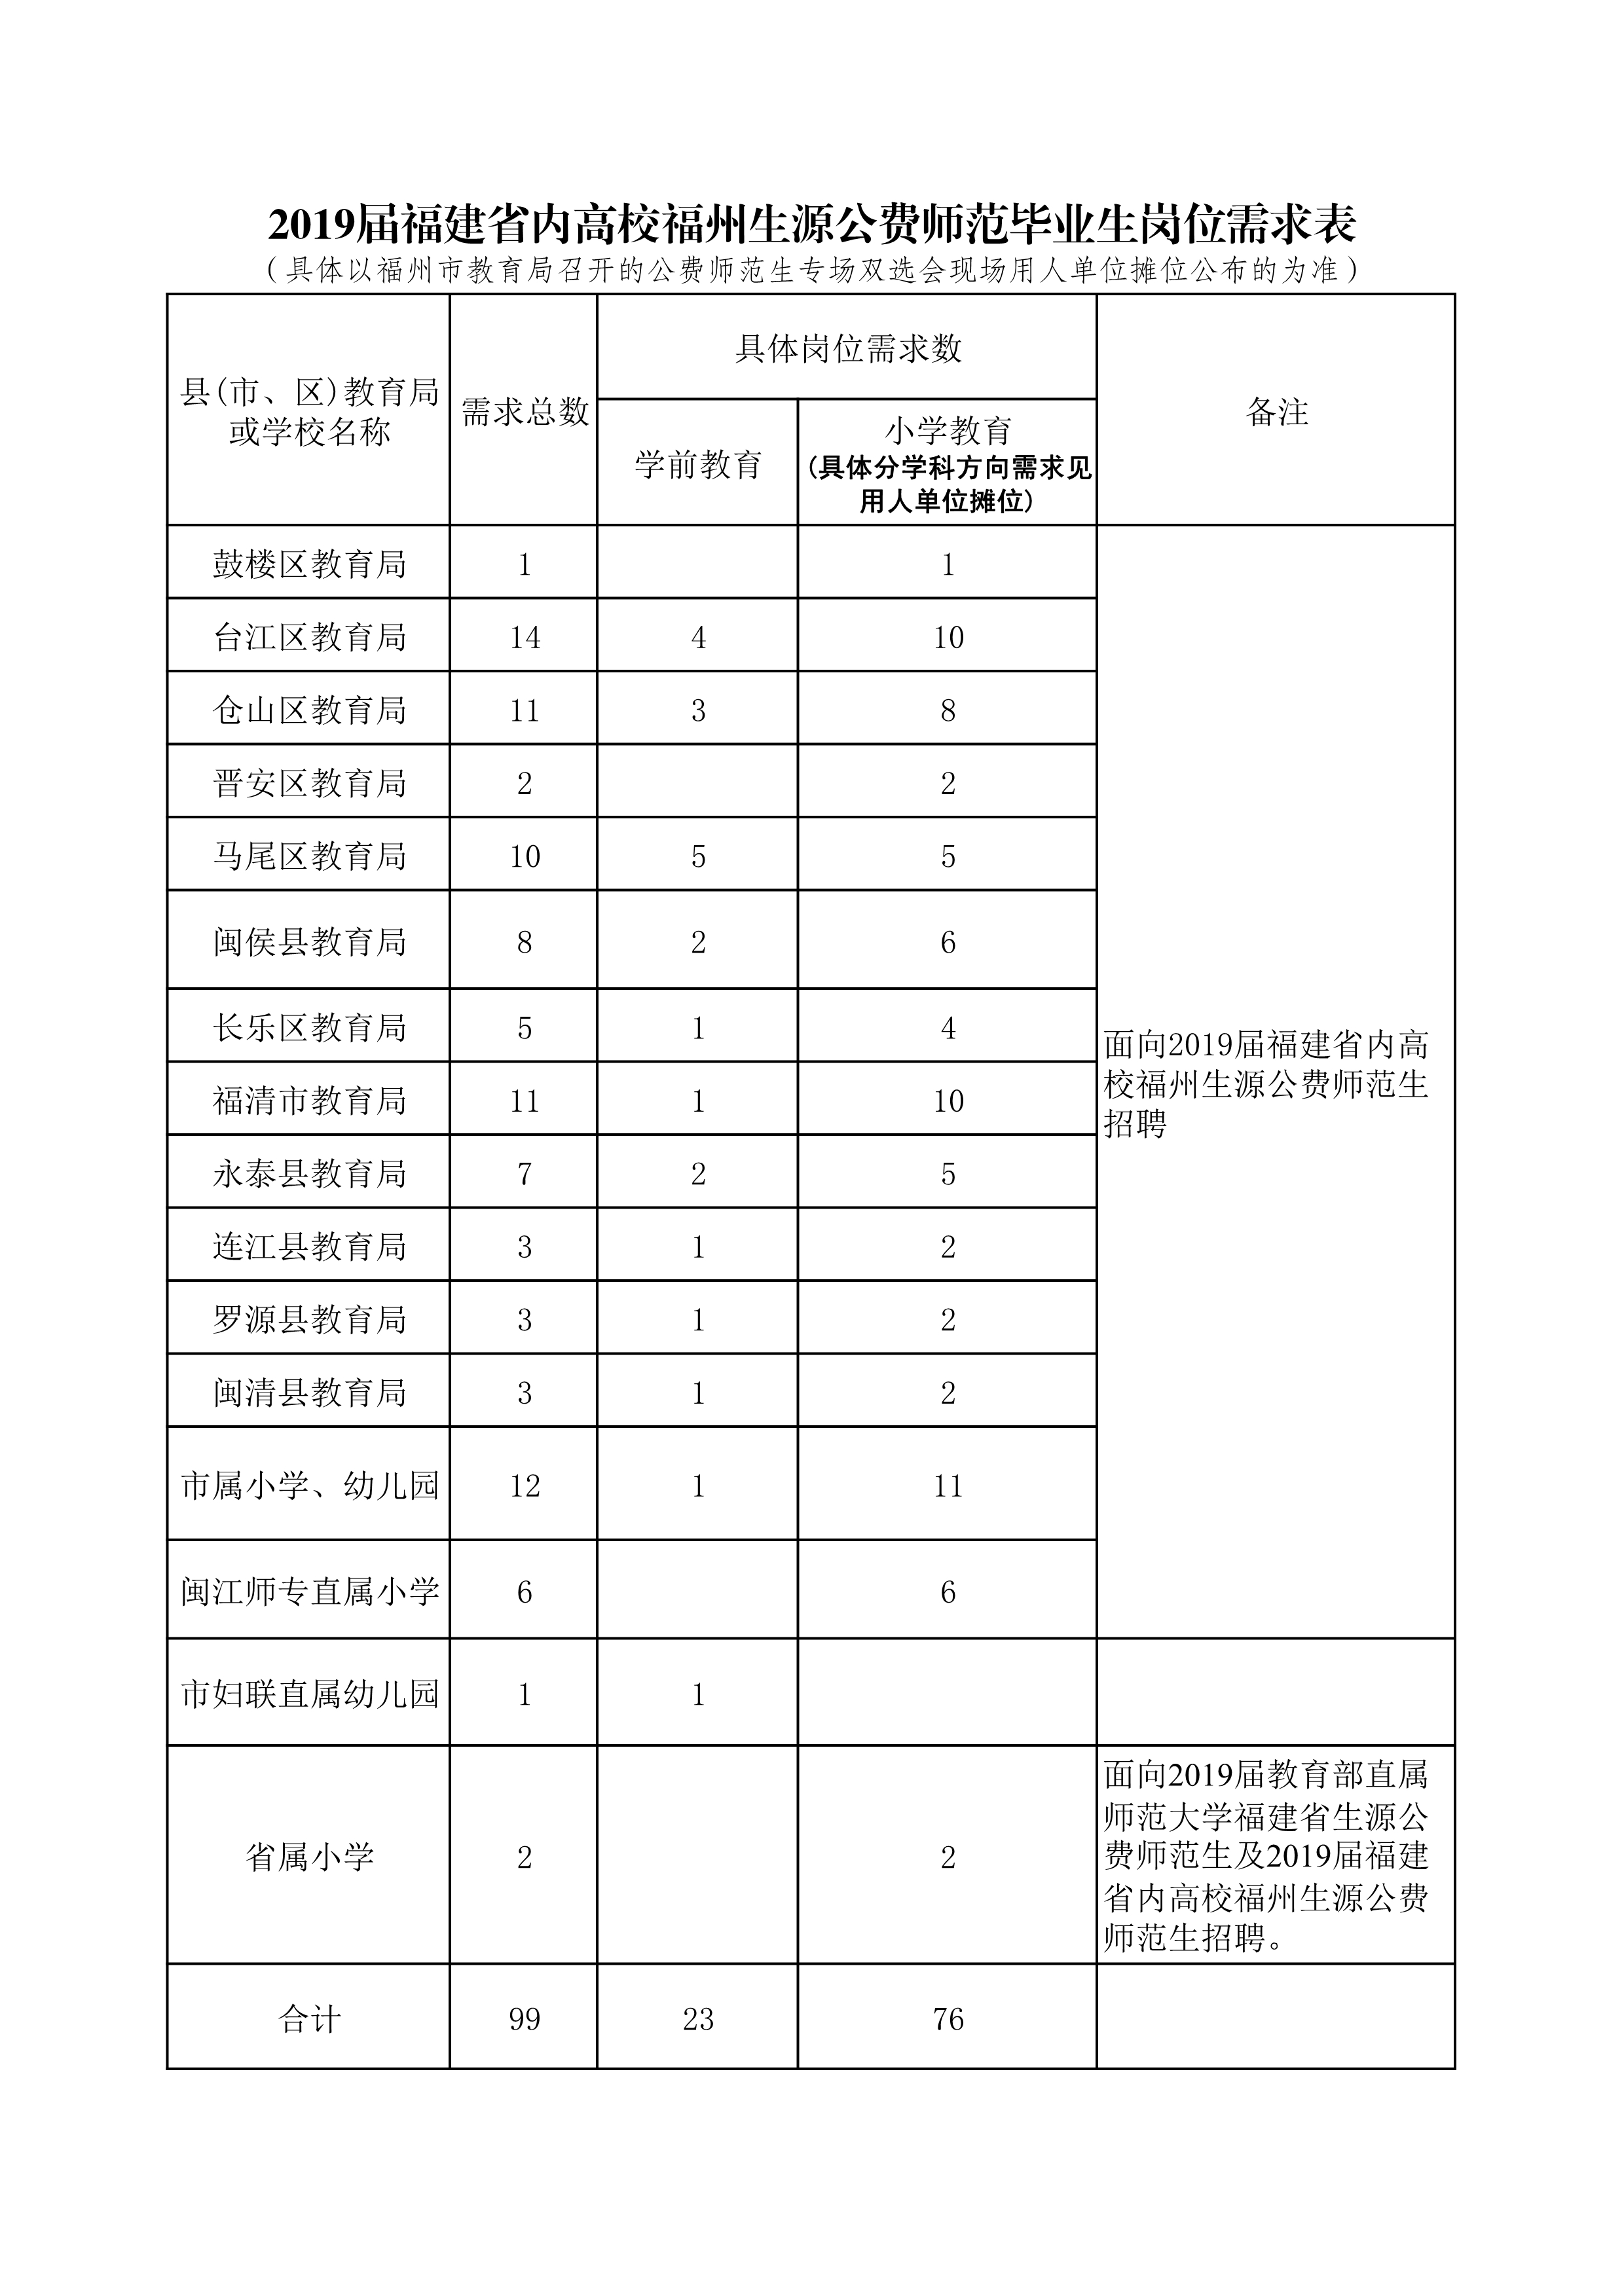 2019届福建省内高校福州生源公费师范毕业生岗位需求表